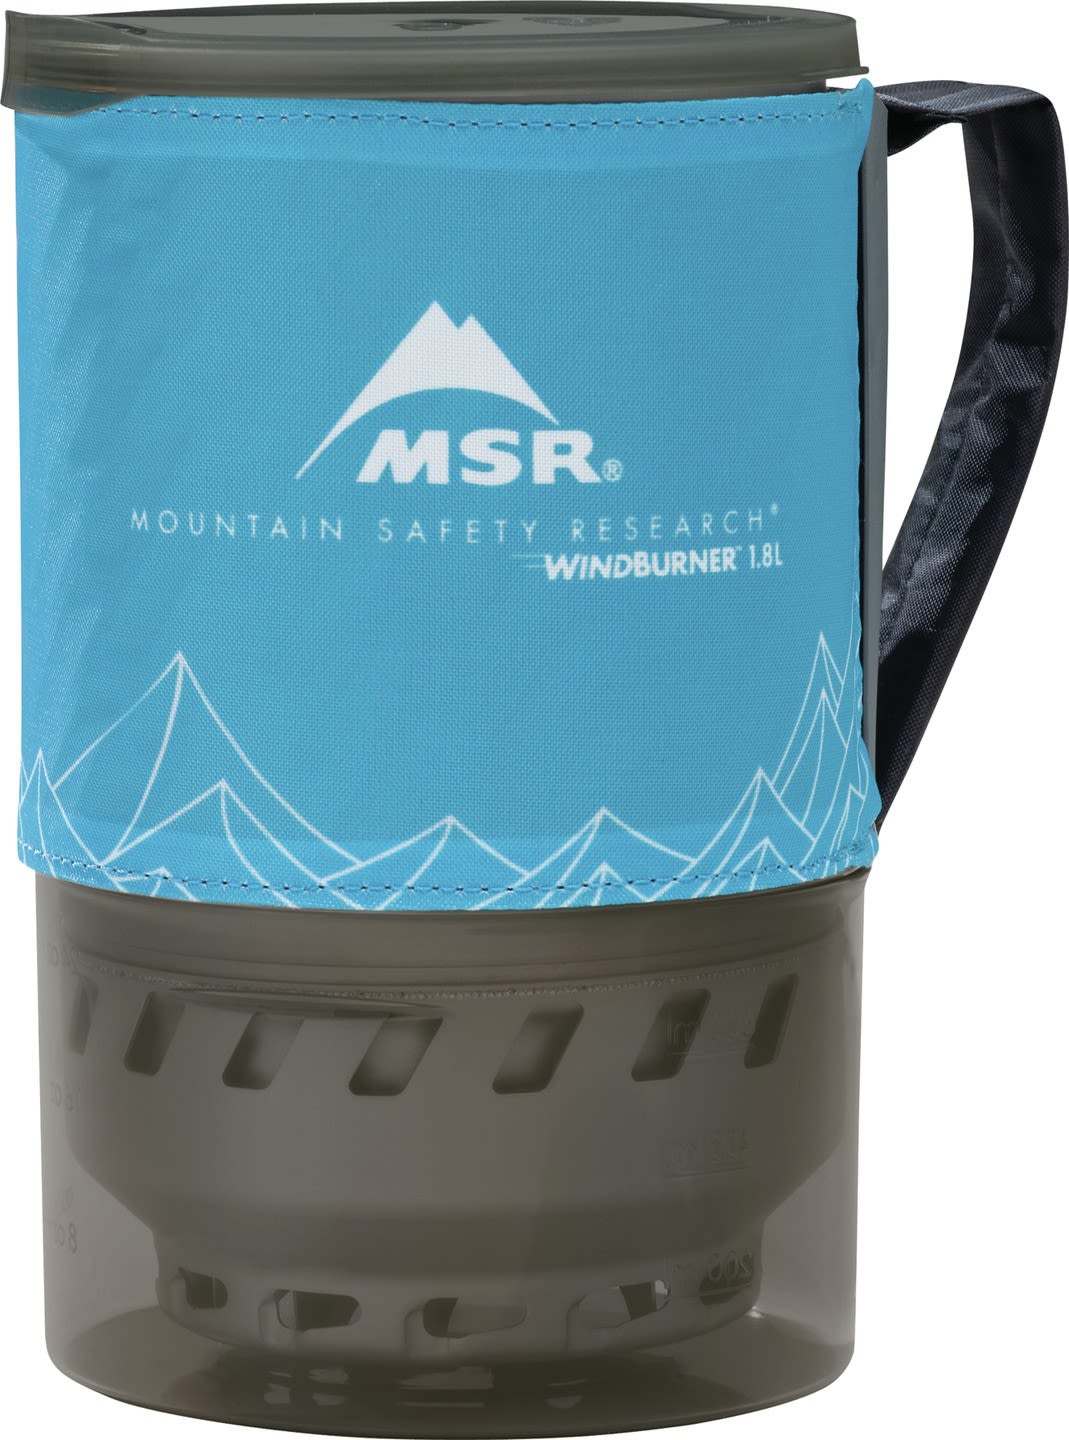 MSR Windburner 1-8L Accessory Pot Blau- Kocher-Zubehr- Grsse 1-8l - Farbe Blue